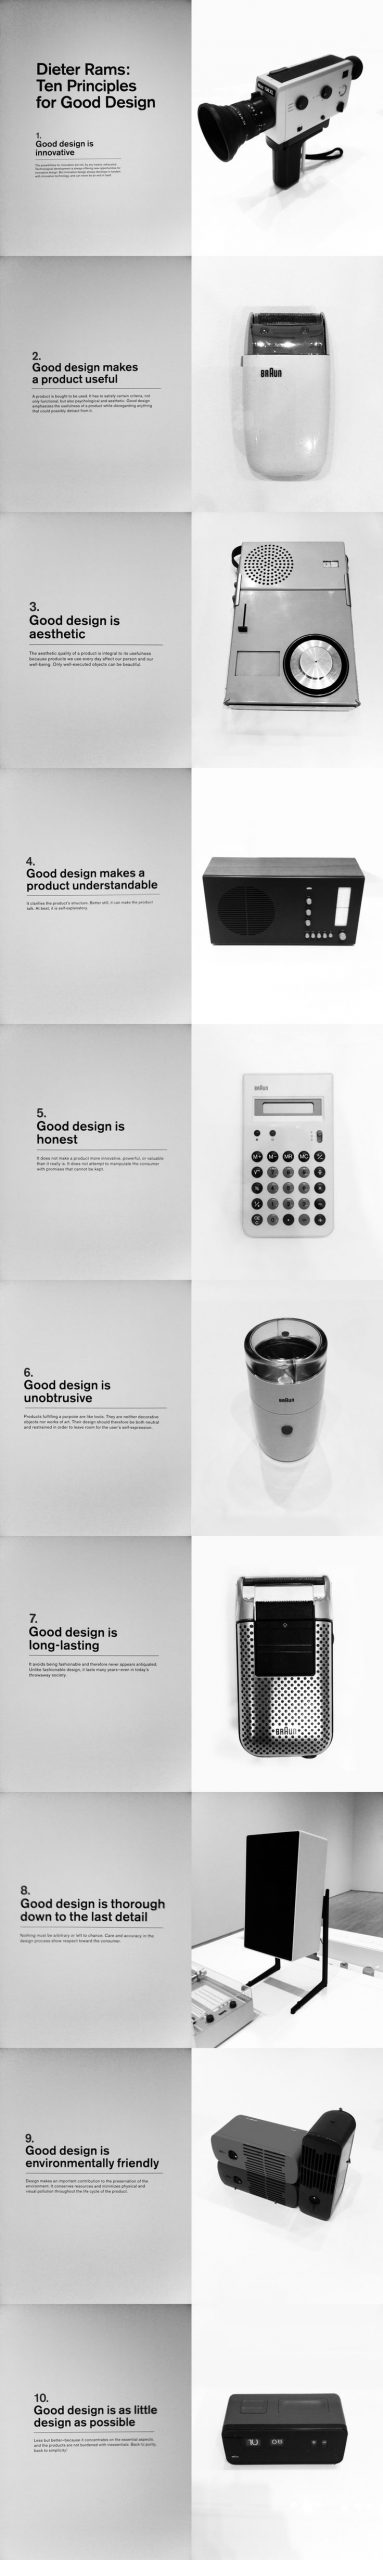 Los 10 principios del diseño